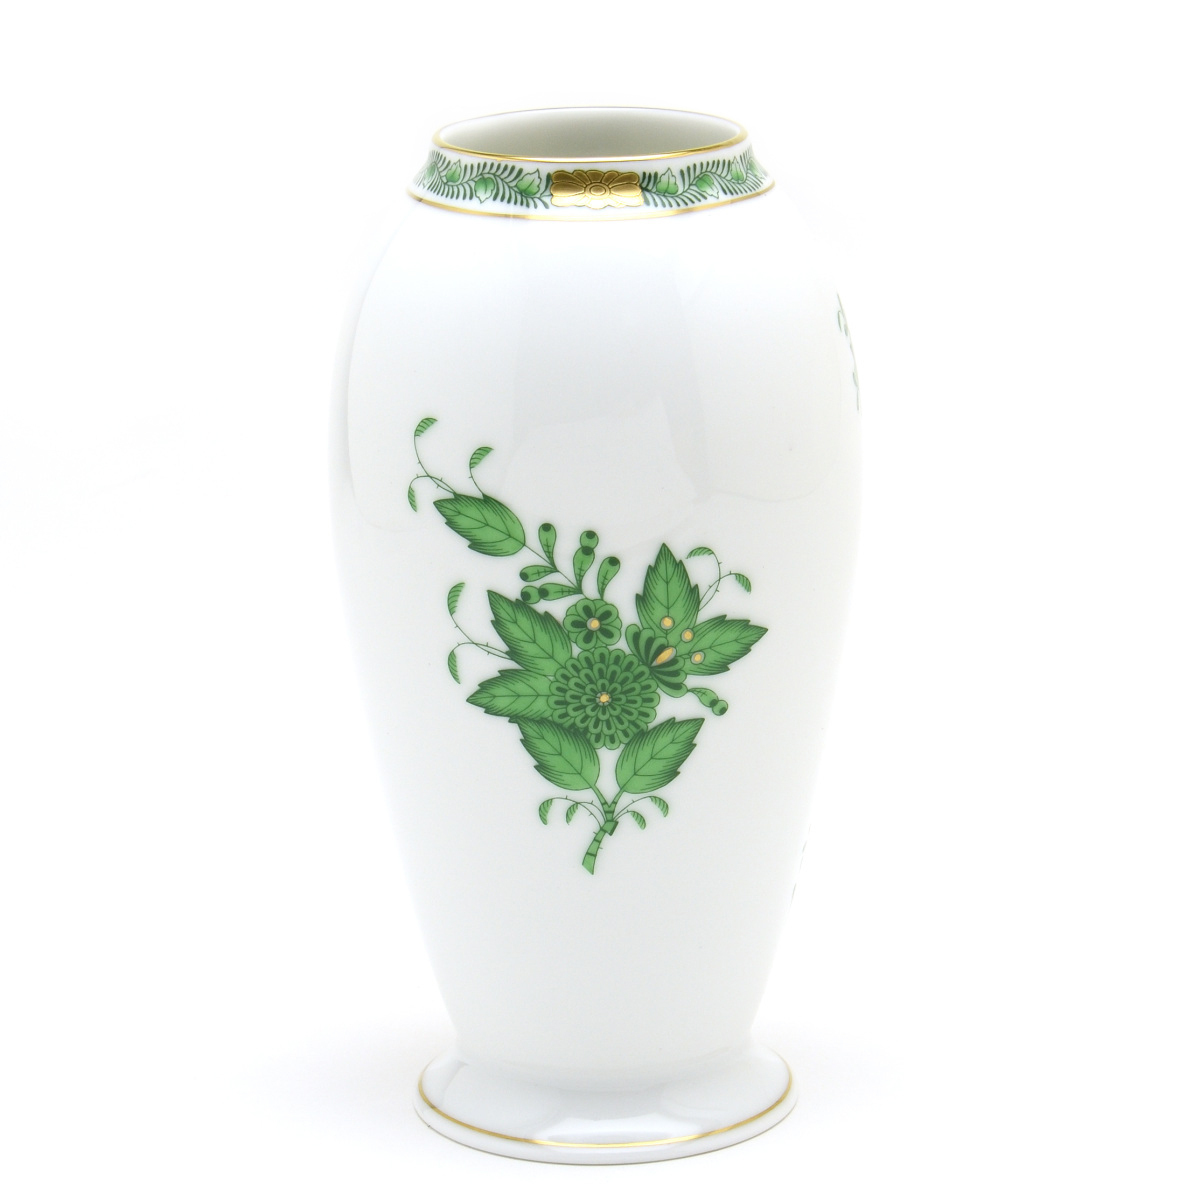 専門ショップ 花器 花生け 磁器製 アポニーグリーン 花瓶(07012